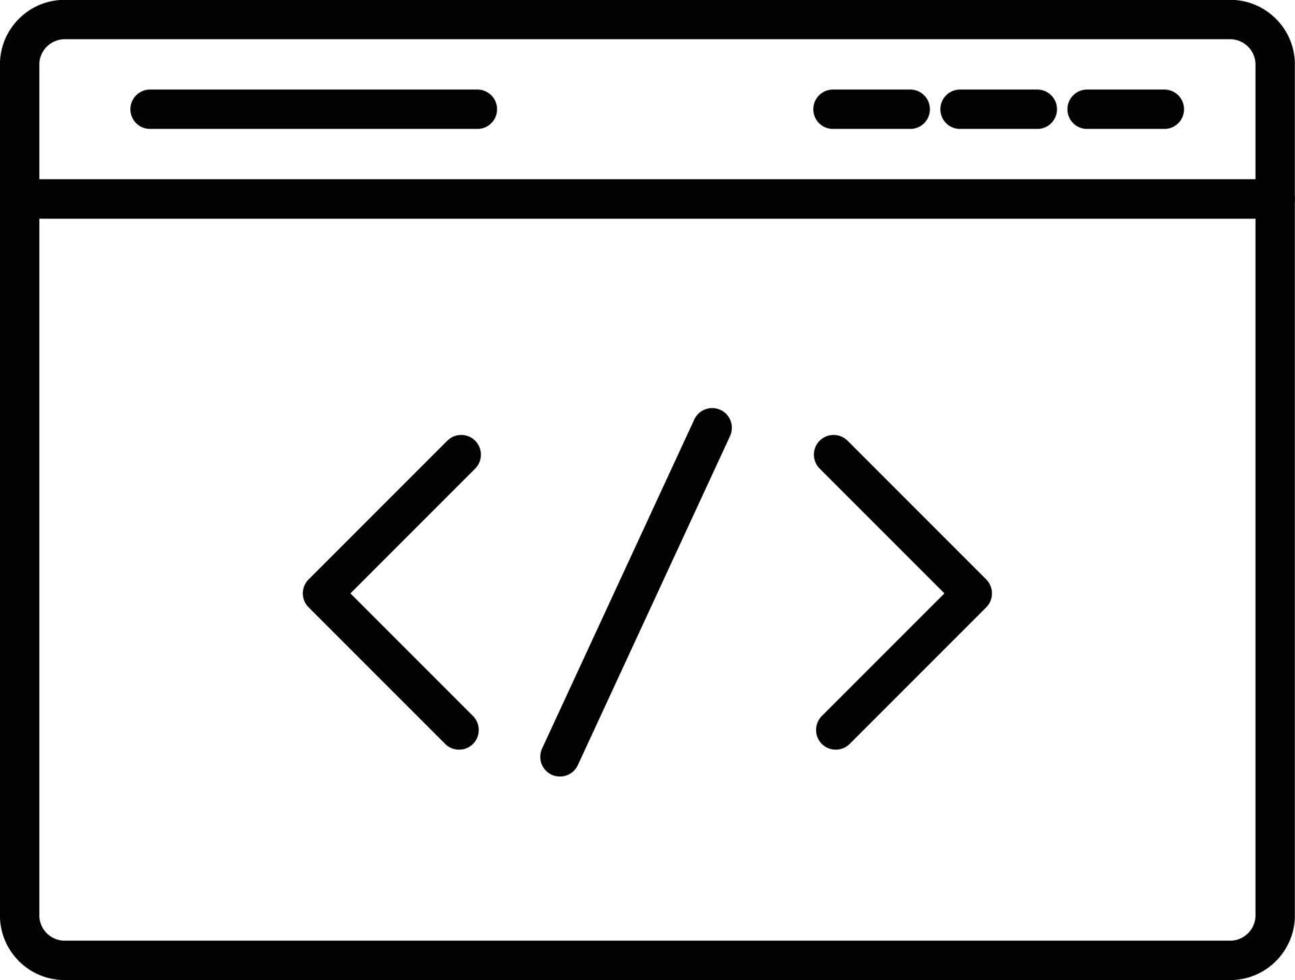 Webseiten-Vektorsymbol, das leicht geändert oder bearbeitet werden kann vektor